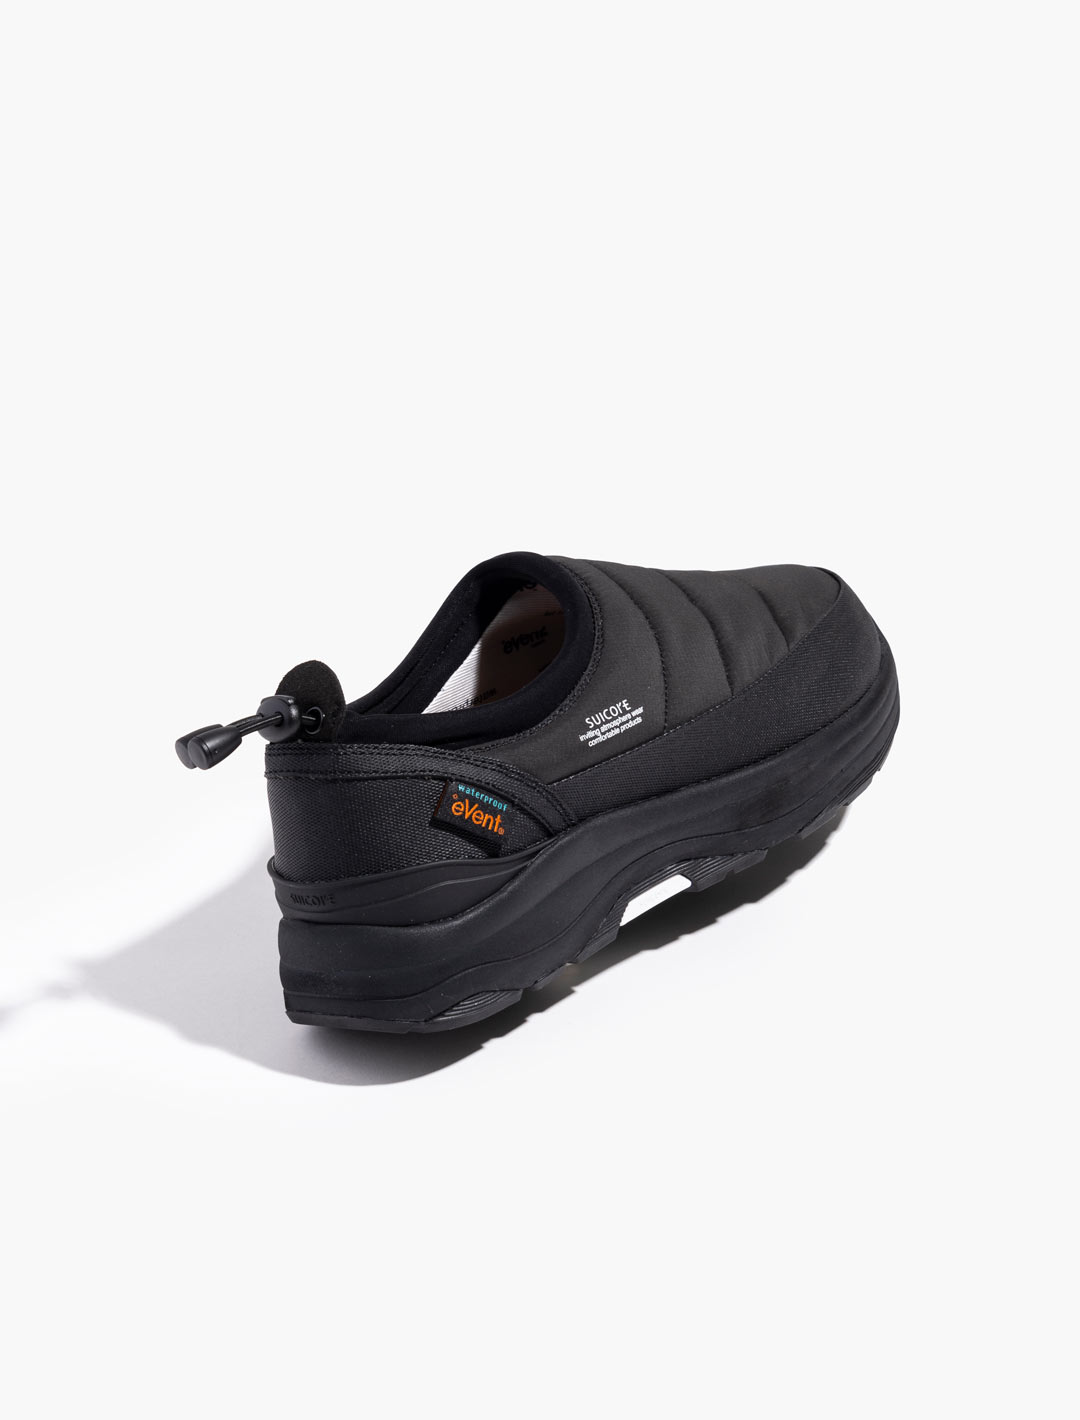 PEPPER Slip-on Shoes - Black